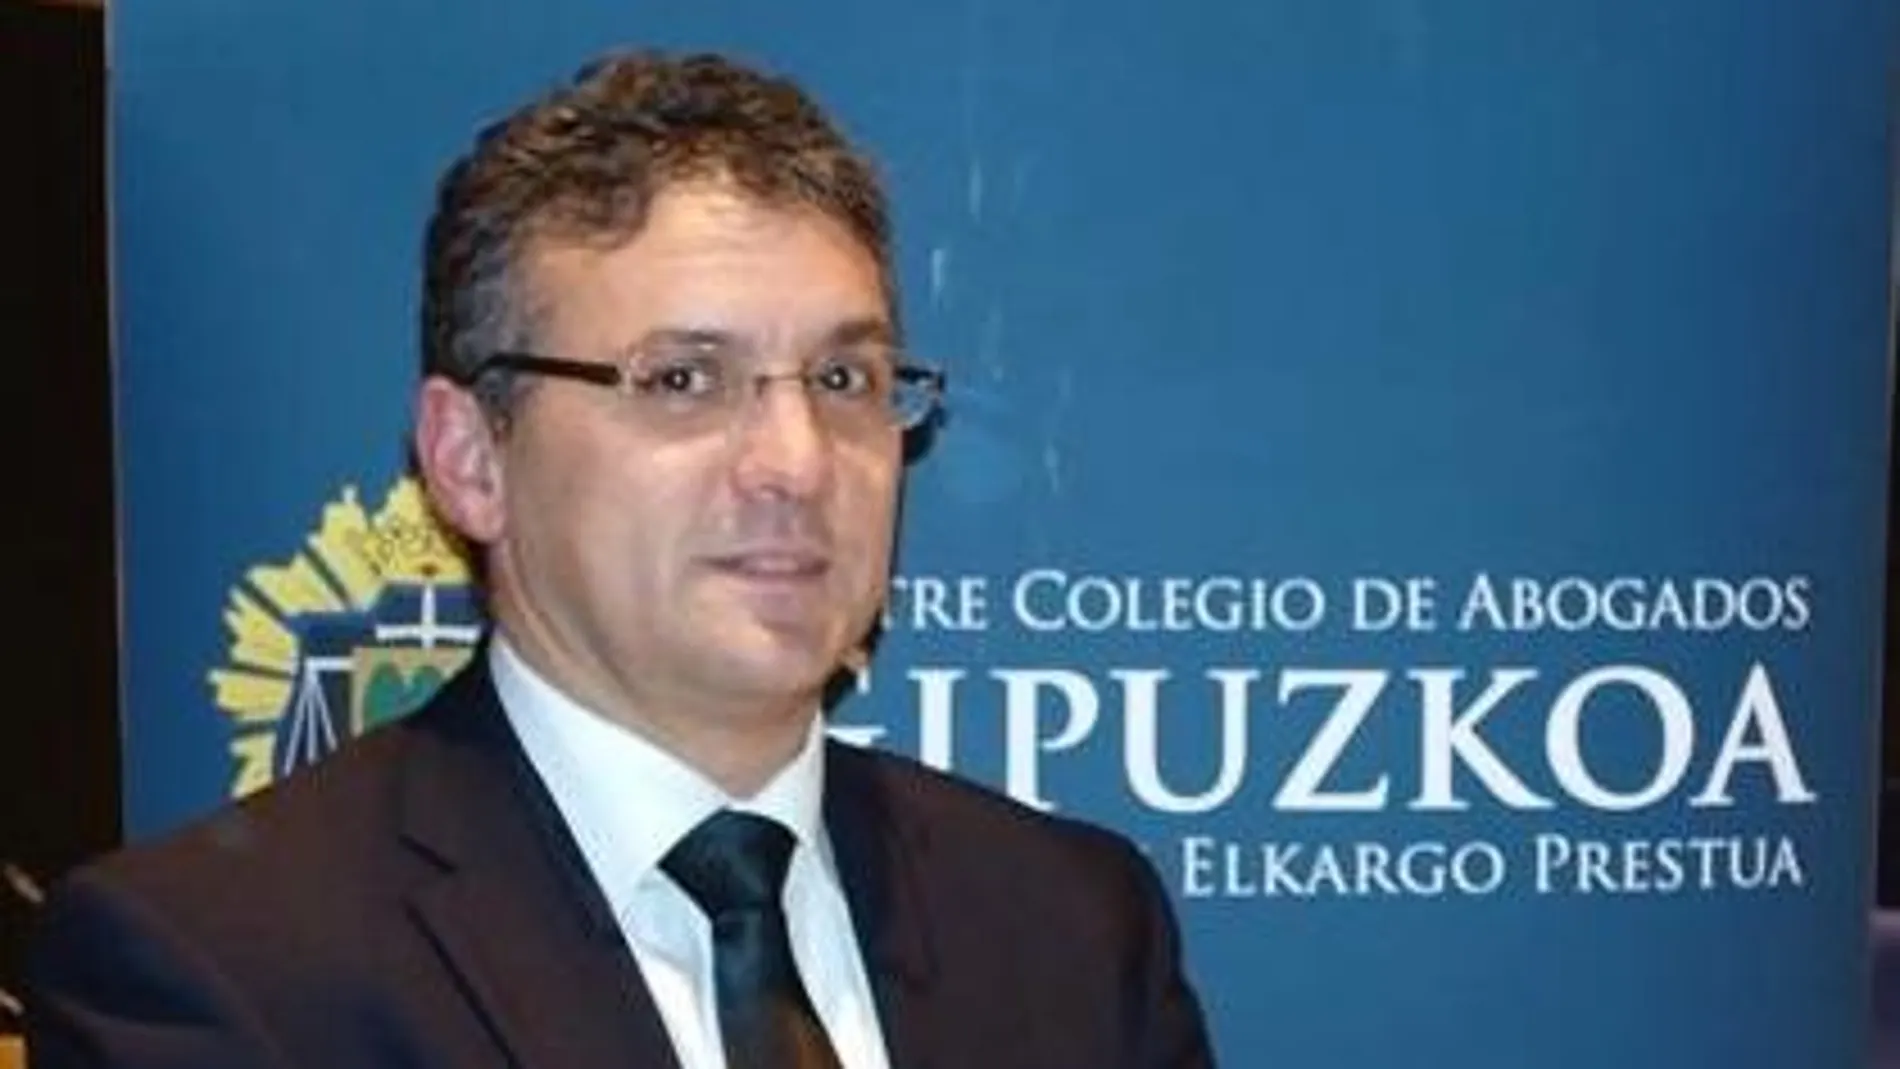 El abogado Francisco Ignacio López Lera, señalado como "enemigo del euskera"